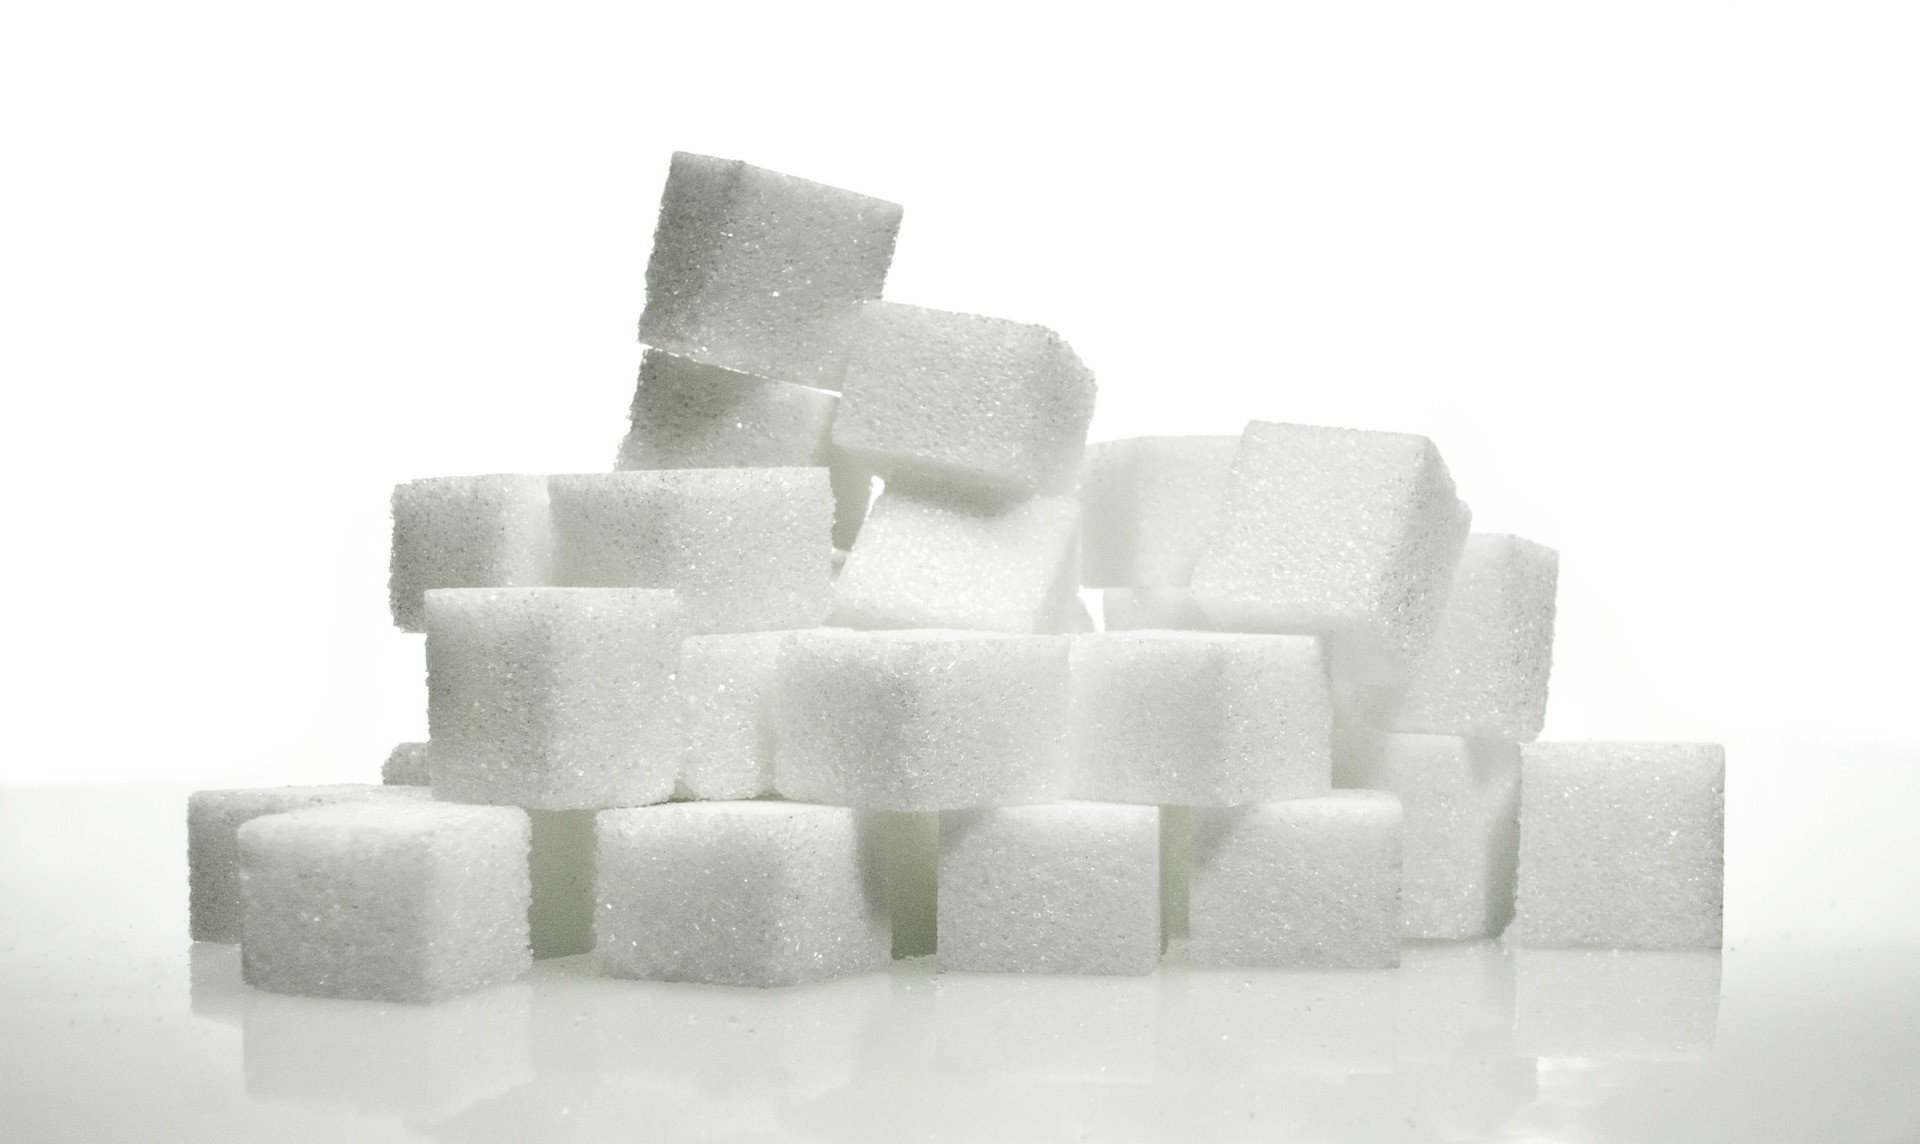 Určite viete, že strava bohatá na cukry vedie k zvýšeniu hmotnosti, najmä v oblasti brucha, a všeobecne vášmu zdraviu vôbec neprospieva. Existuje však aj ďalší dôvod, prečo si sladkosti a sladké malinovky odpustiť - spôsobujú predčasné starnutie kože.

Podľa doktorky Kristiny Goldenbergovej z Goldenberg Dermatology v New Yorku nadbytok cukru v jedálničku vedie k predčasnému starnutiu kvôli procesu zvanému glykácia. K tomuto javu dochádza, keď sa nadbytok glukózy v pokožke spojí s kolagénovými a elastínovými vláknami, a tým spôsobuje ich poškodenie. Glykácia v koži poškodzuje kolagén, znižuje elastickosť pleti a je príčinou zvädnutosti kože, výskytu vrások a porúch kožnej štruktúry.

"Jednoduché cukry k sebe spájajú jednotlivé vlákna kolagénu v koži i iných orgánoch a tie potom nie sú schopné reparačných procesov," vysvetlila lekárka Jana Votrubová a doplnila, že skôr ako konkrétne potraviny k starnutiu kože prispieva ich nevhodná úprava - vyprážanie či grilovanie.